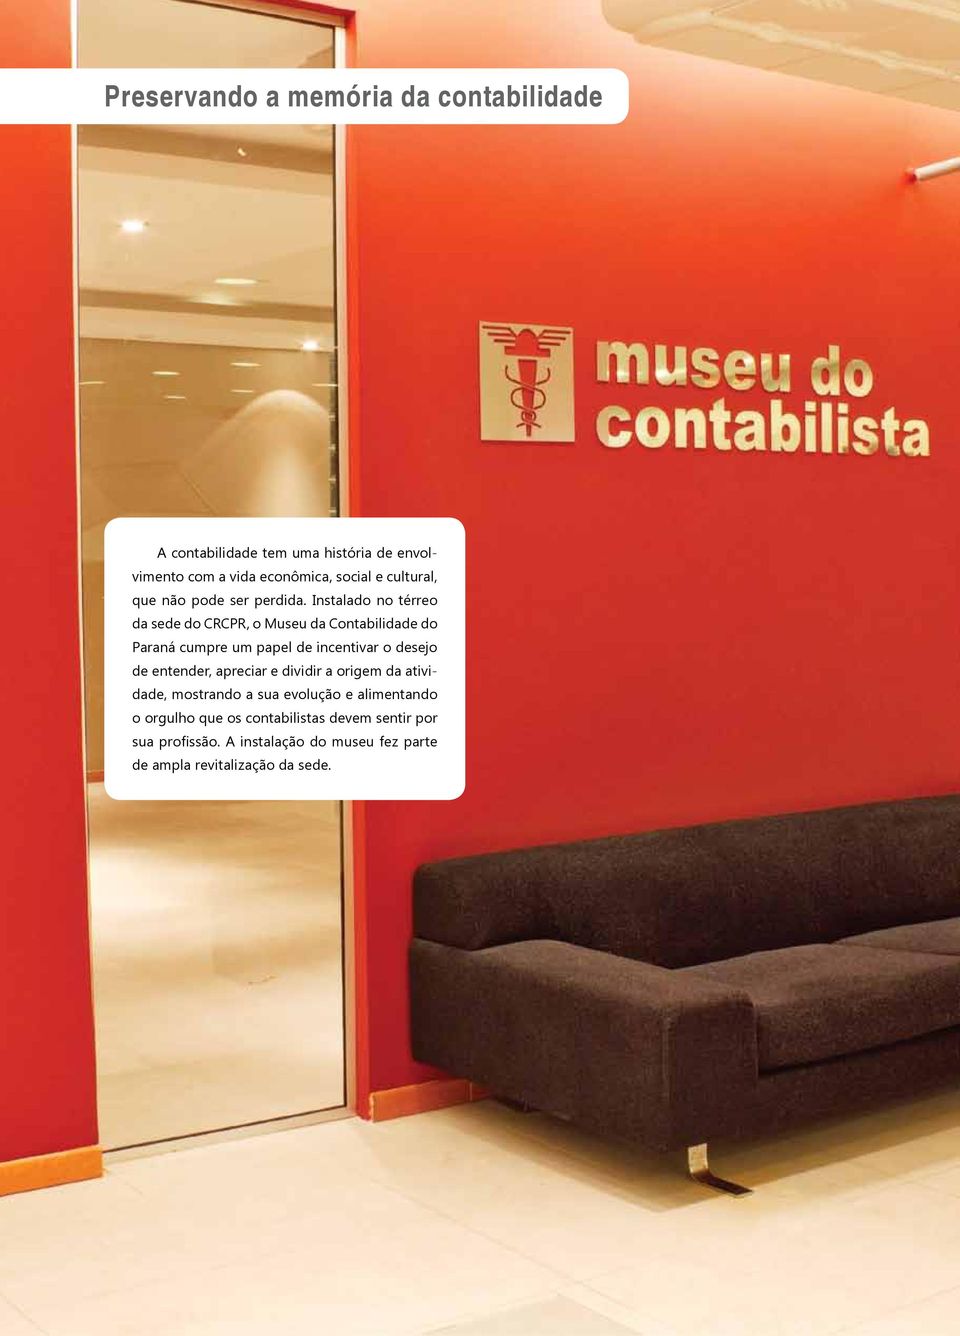 Instalado no térreo da sede do CRCPR, o Museu da Contabilidade do Paraná cumpre um papel de incentivar o desejo de